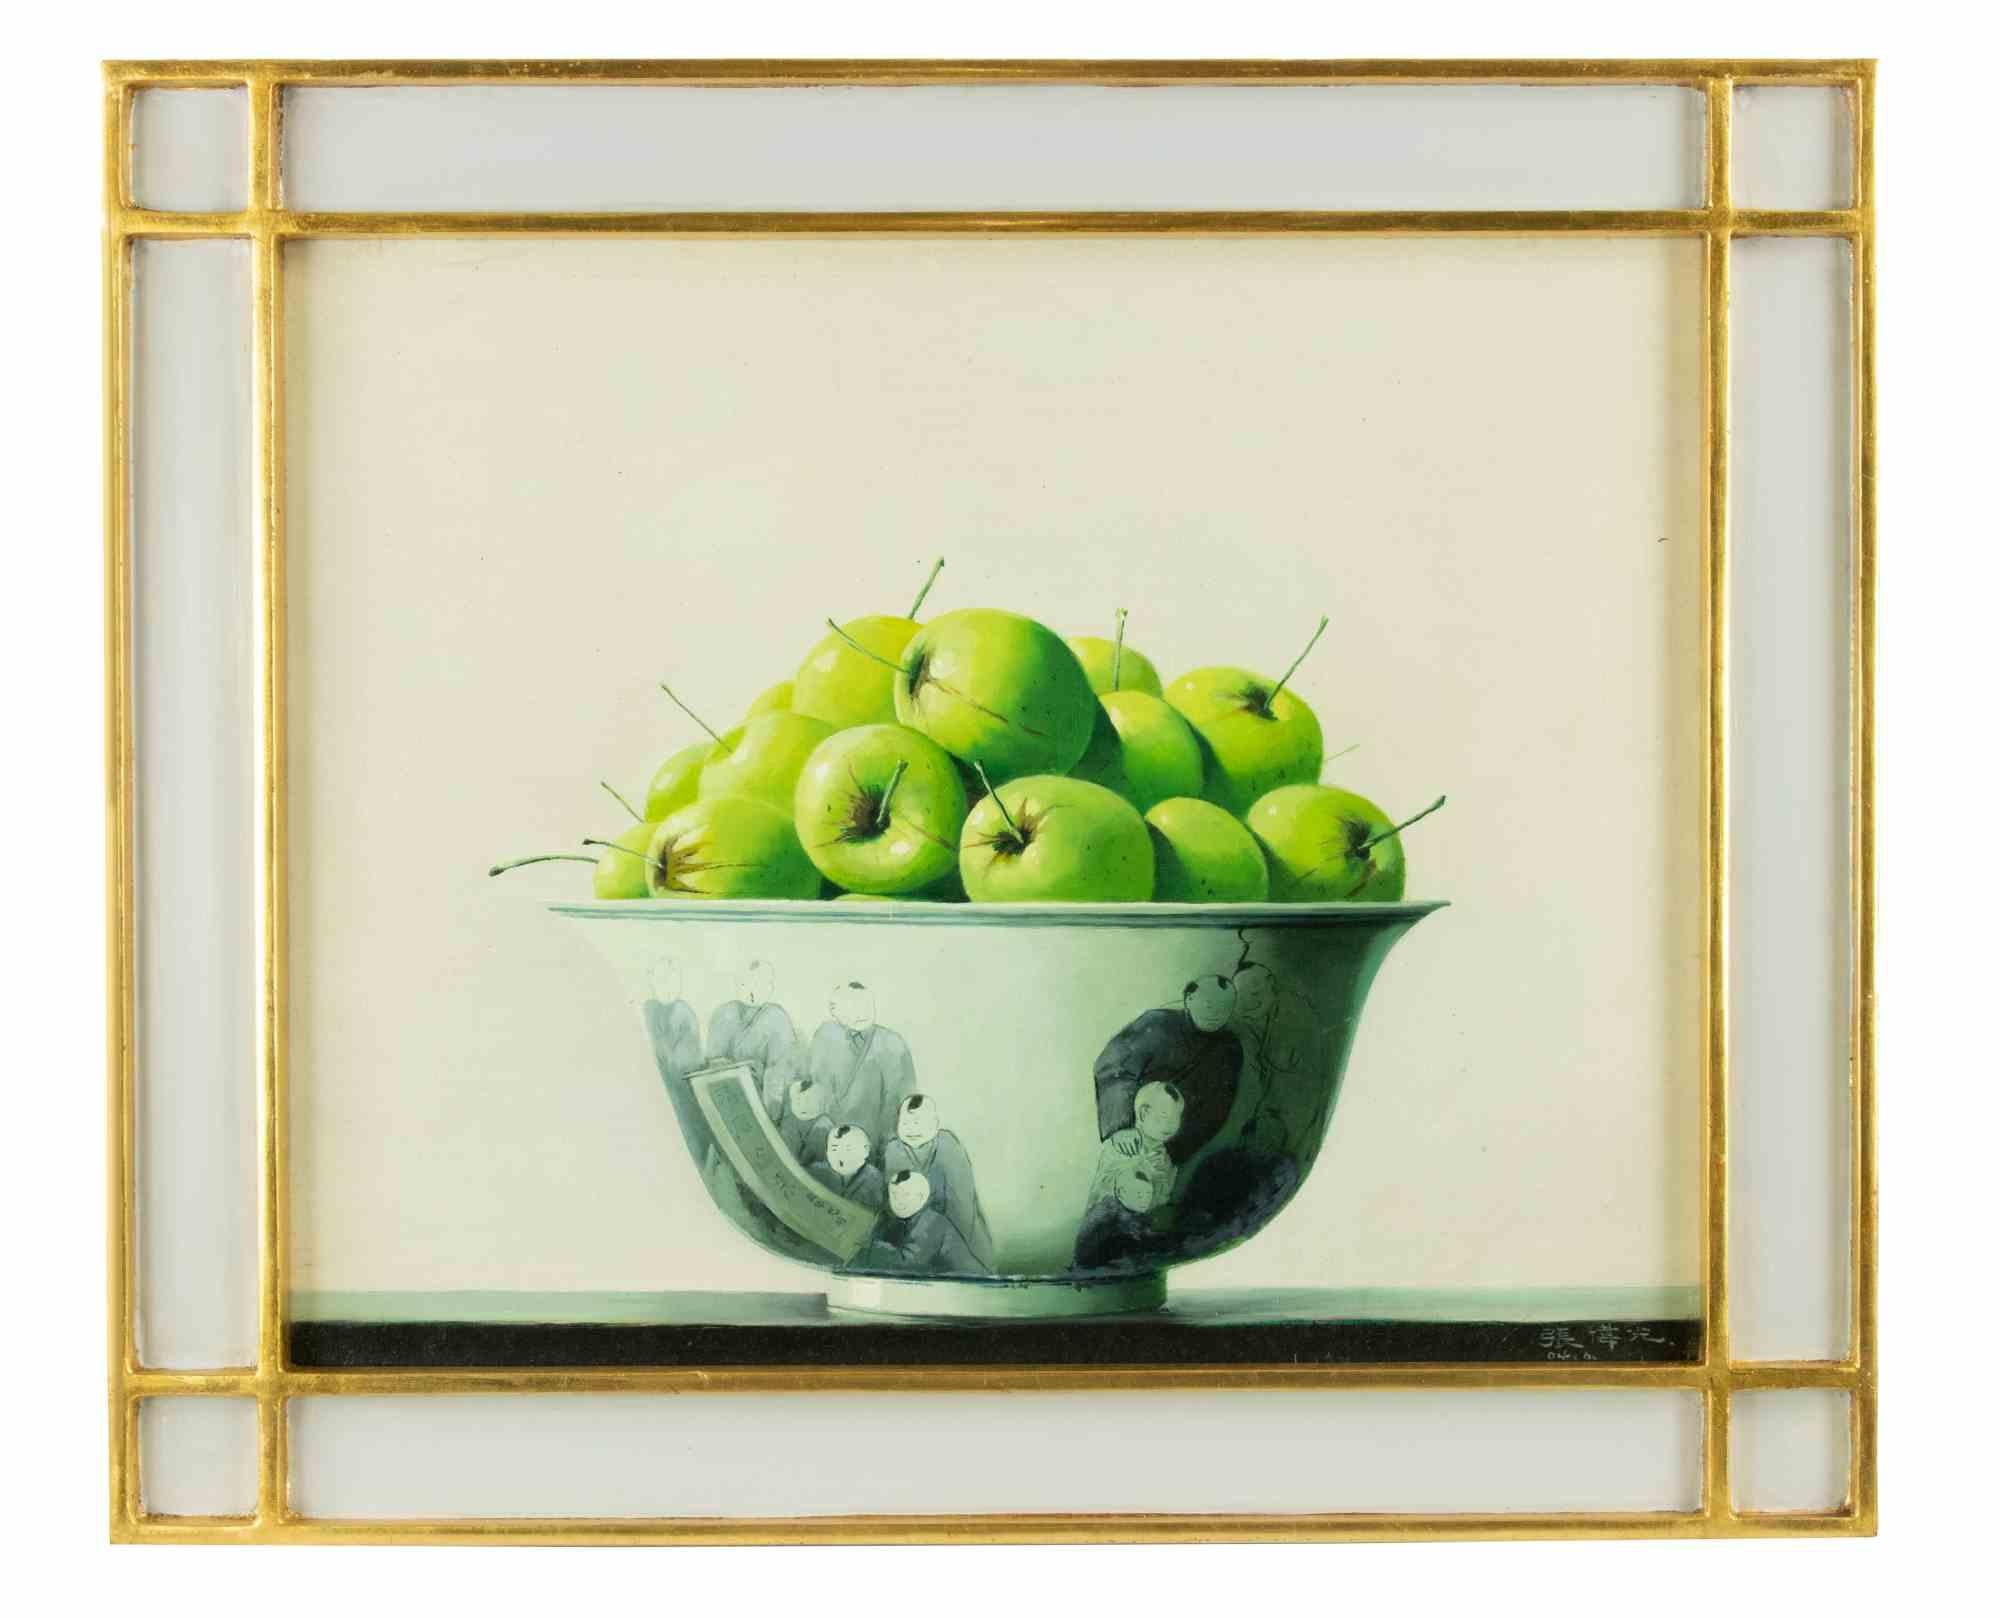 Grüne Äpfel ist ein Original-Ölgemälde realisiert  von Zhang Wei Guang (Mirror) in den 2000er Jahren.

Einschließlich Rahmen.

Handsigniert am unteren rechten Rand.

Signatur und verschiedene Zeichen in chinesischer Kalligrafie auf der